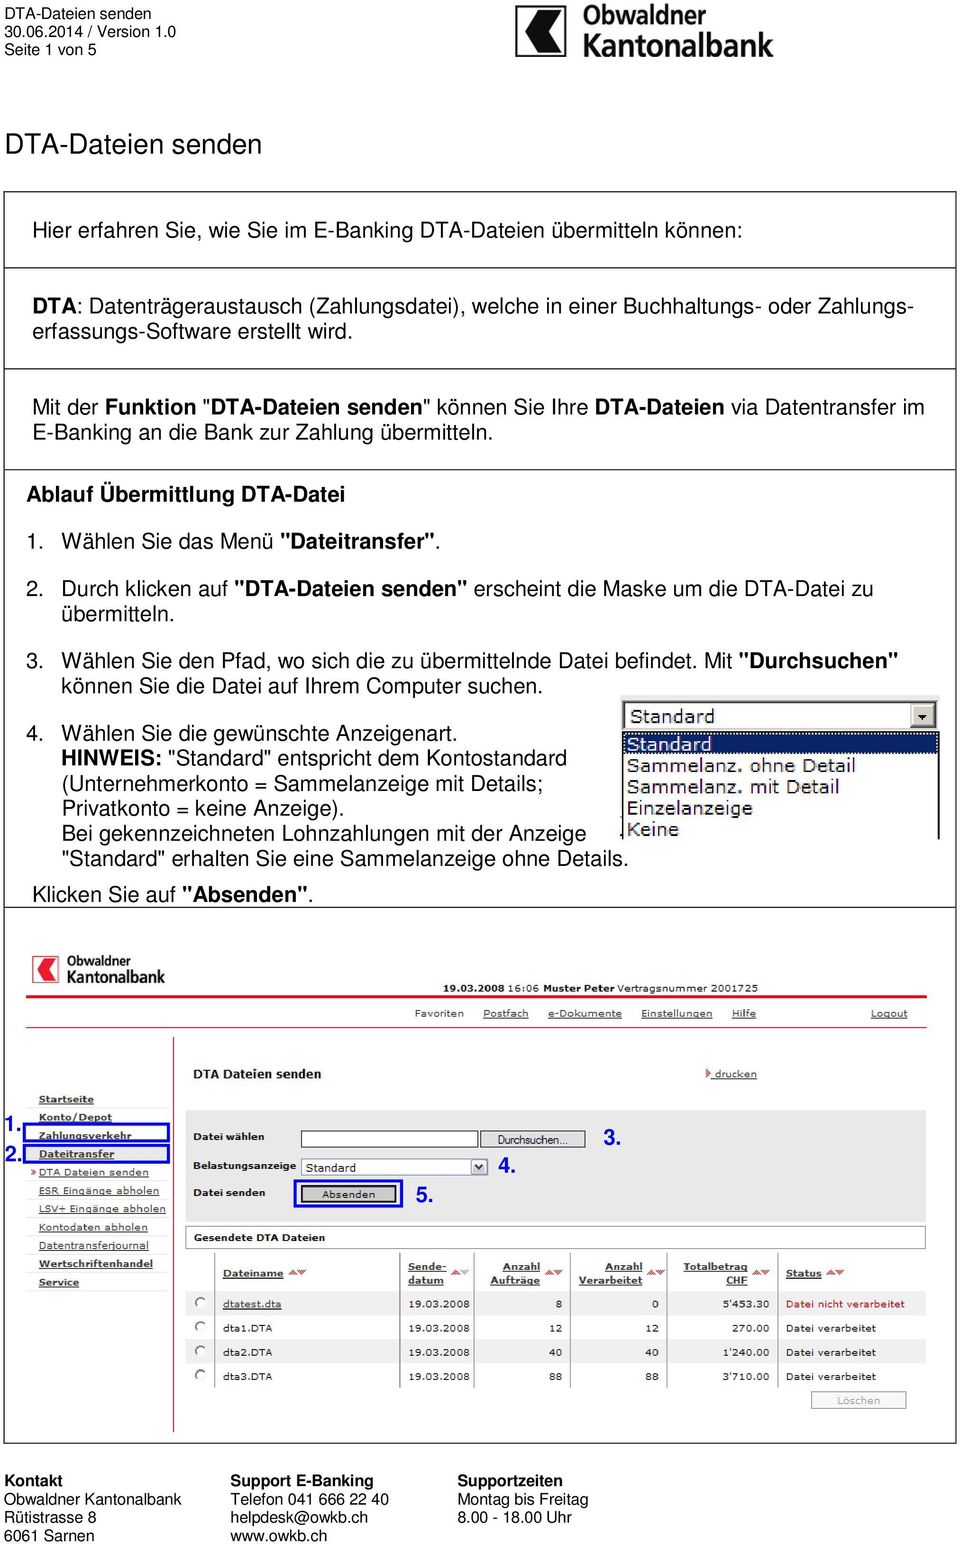 Ablauf Übermittlung DTA-Datei 1. Wählen Sie das Menü "Dateitransfer". 2. Durch klicken auf "DTA-Dateien senden" erscheint die Maske um die DTA-Datei zu übermitteln. 3.